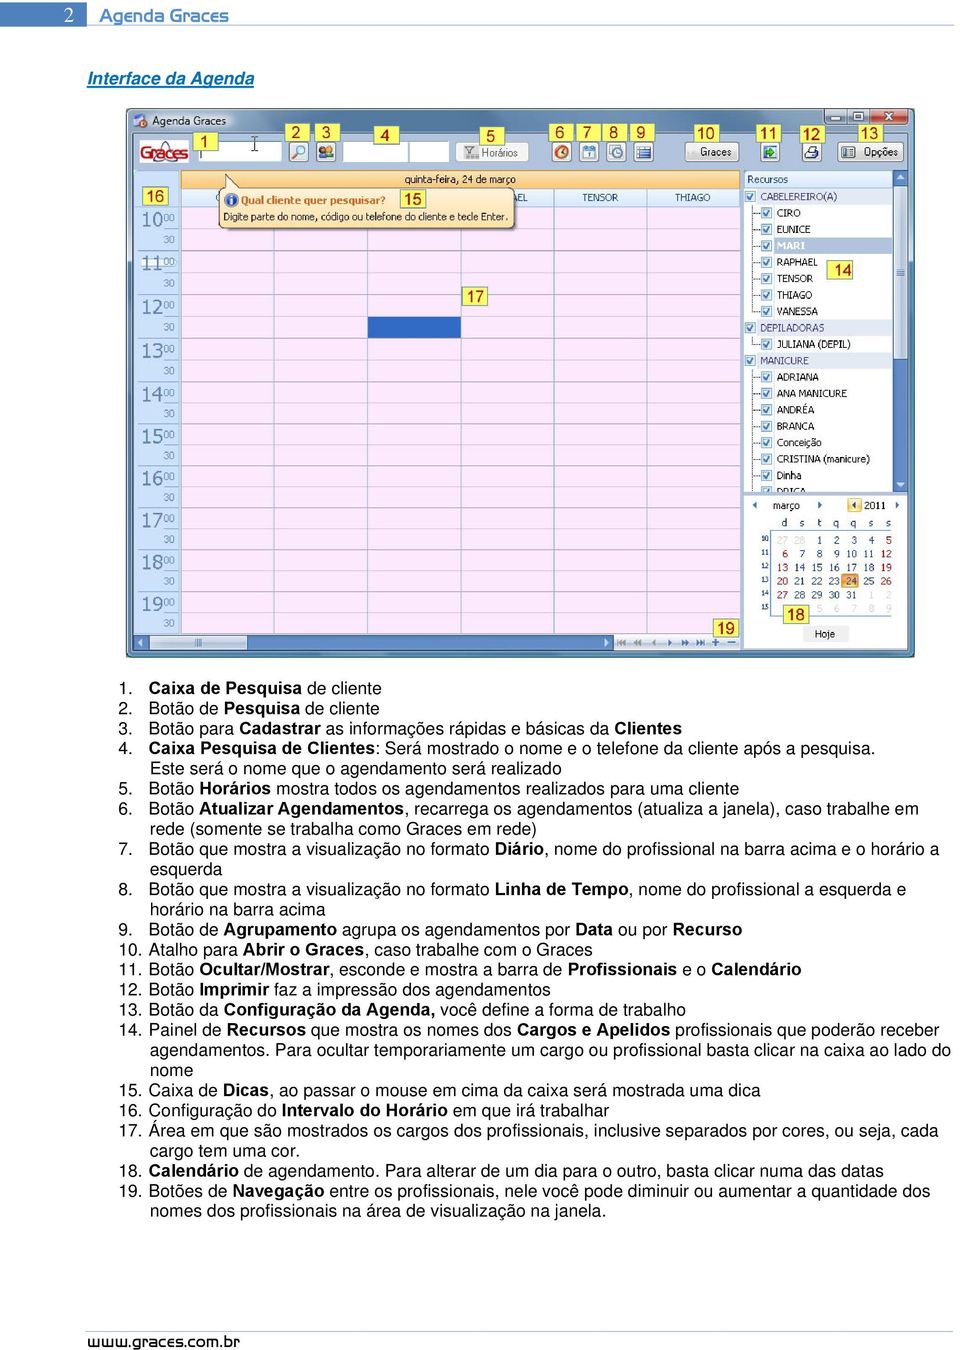 Botão Horários mostra todos os agendamentos realizados para uma cliente 6.